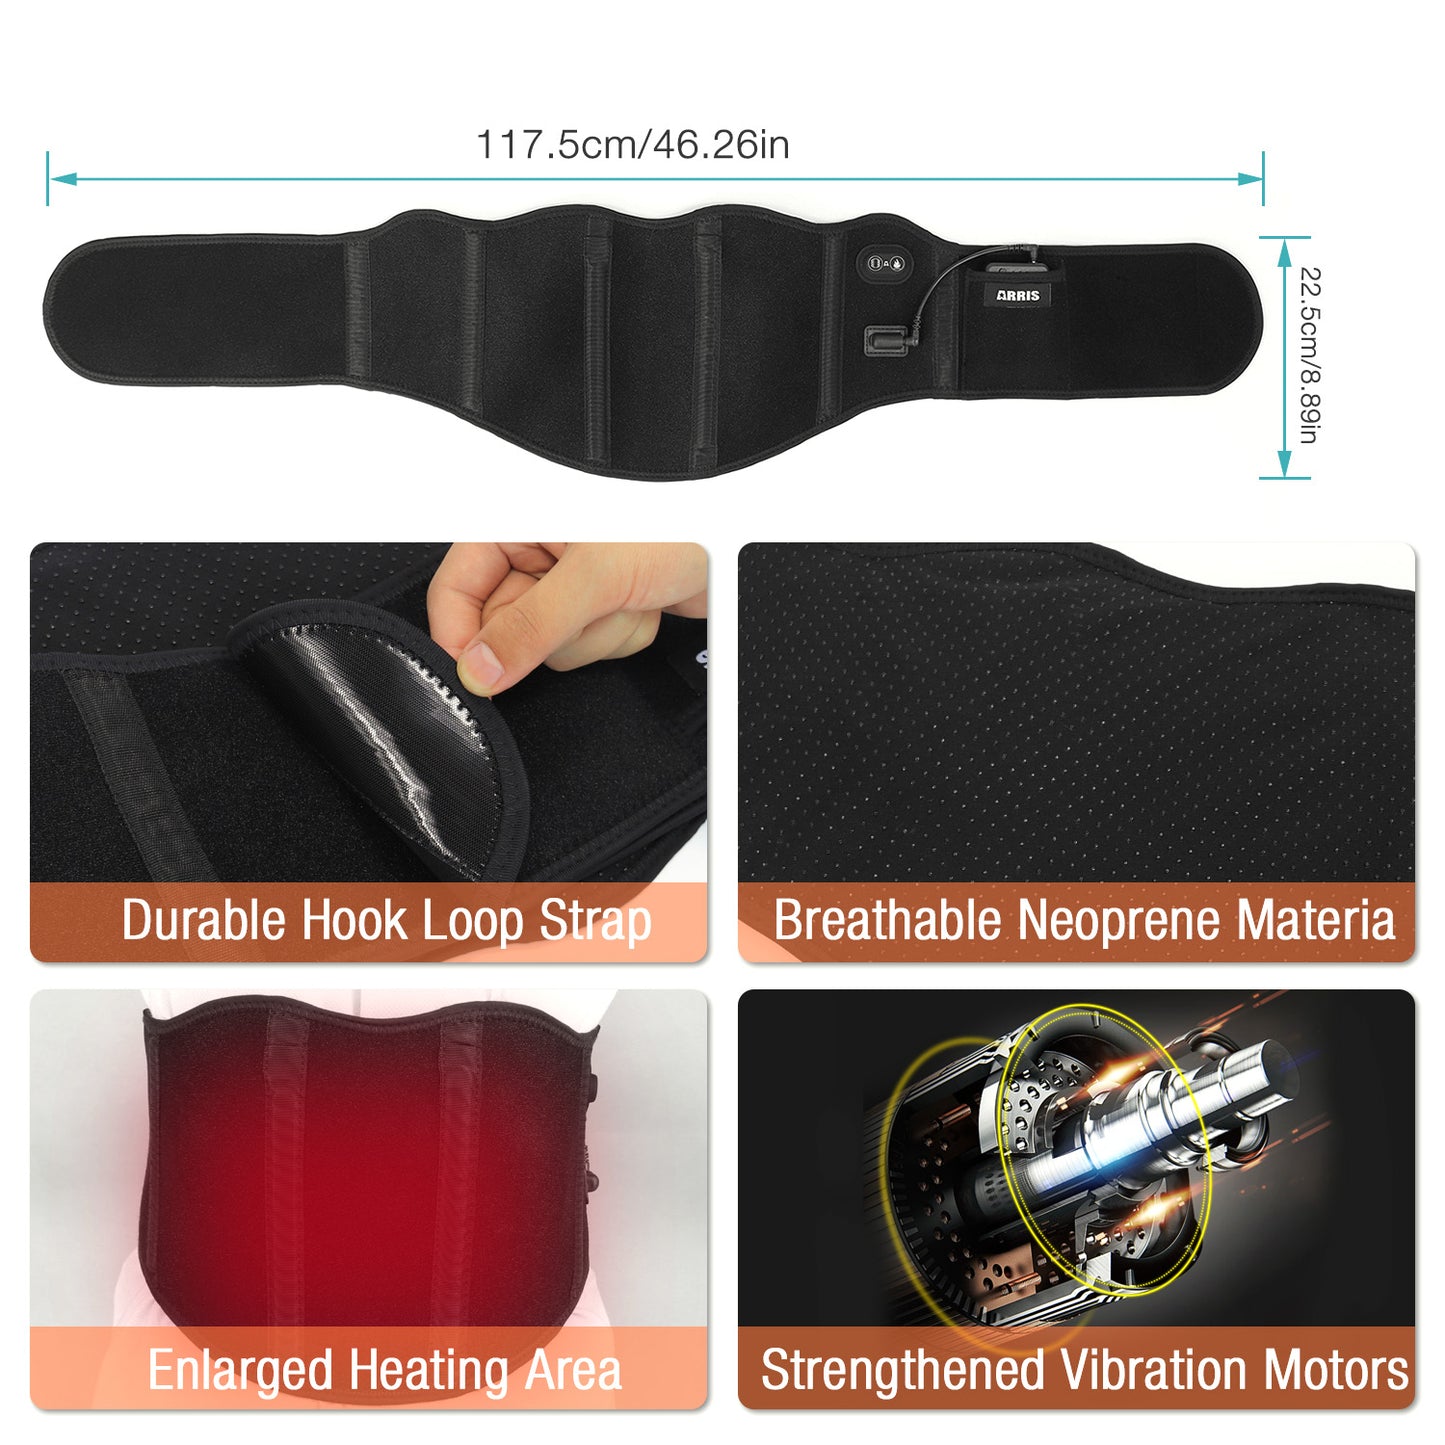 ARRIS 7.4V Battery Heating Massage Back Belt Wrap with Vibration Massager